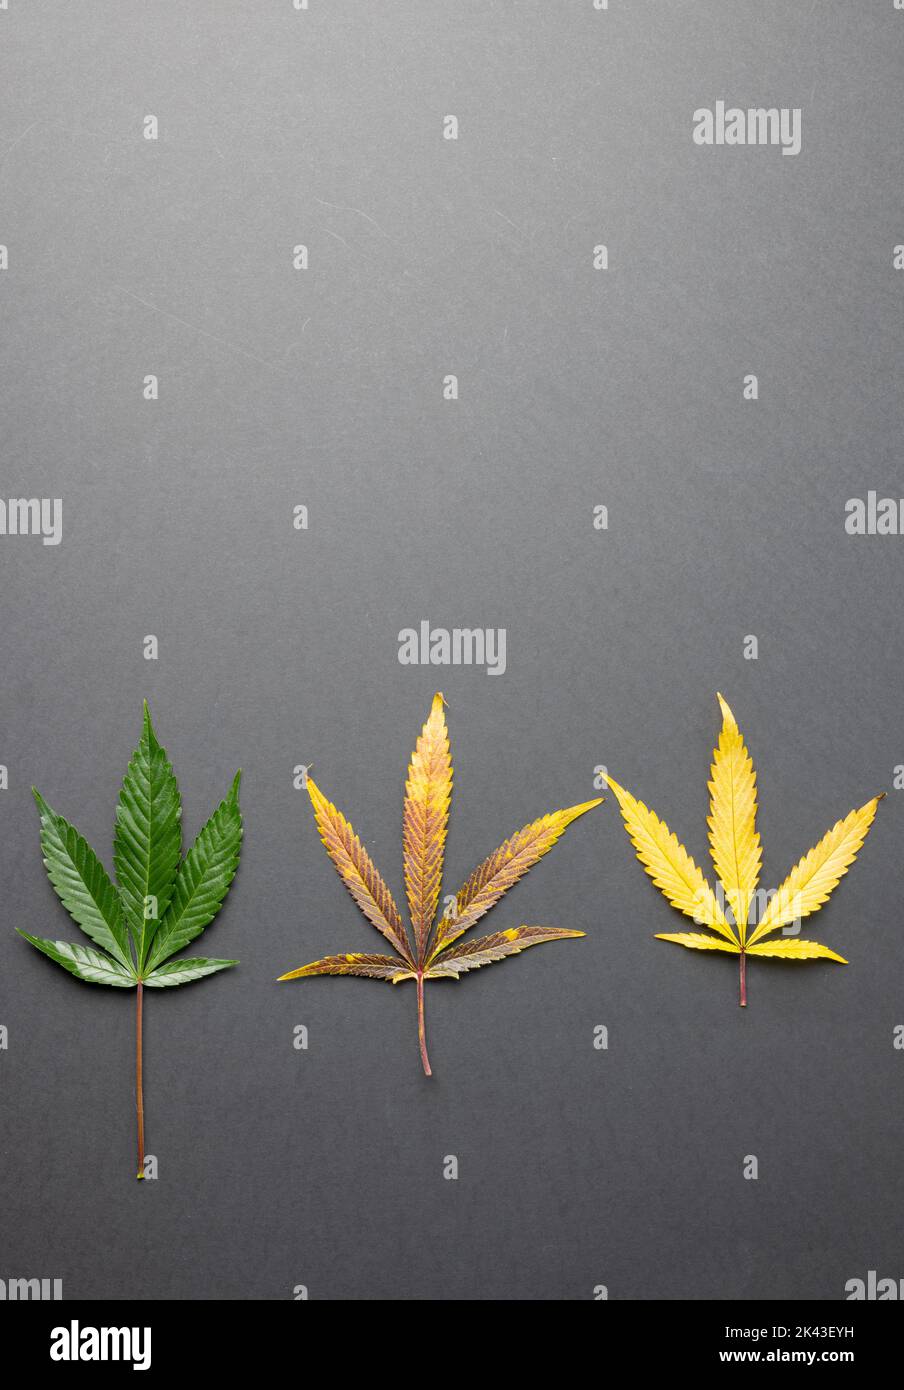 Immagine verticale delle foglie di marihuana sulla superficie grigia Foto Stock